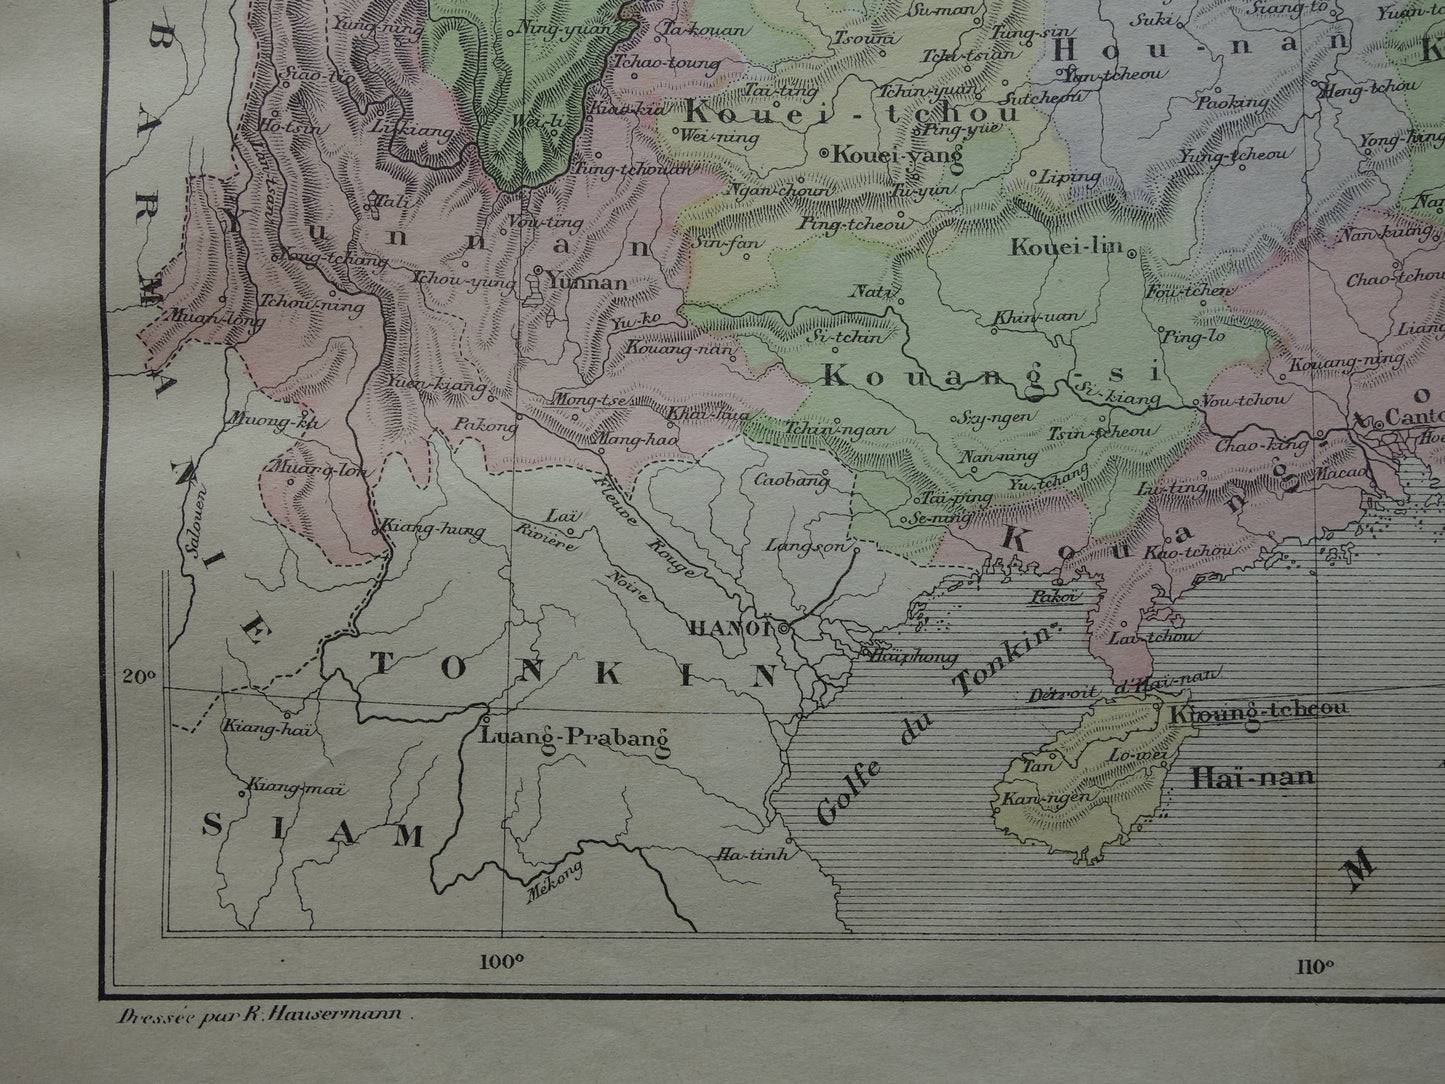 CHINA Oude kaart van Oost China uit het jaar 1896 historische landkaart China oude vintage kaarten